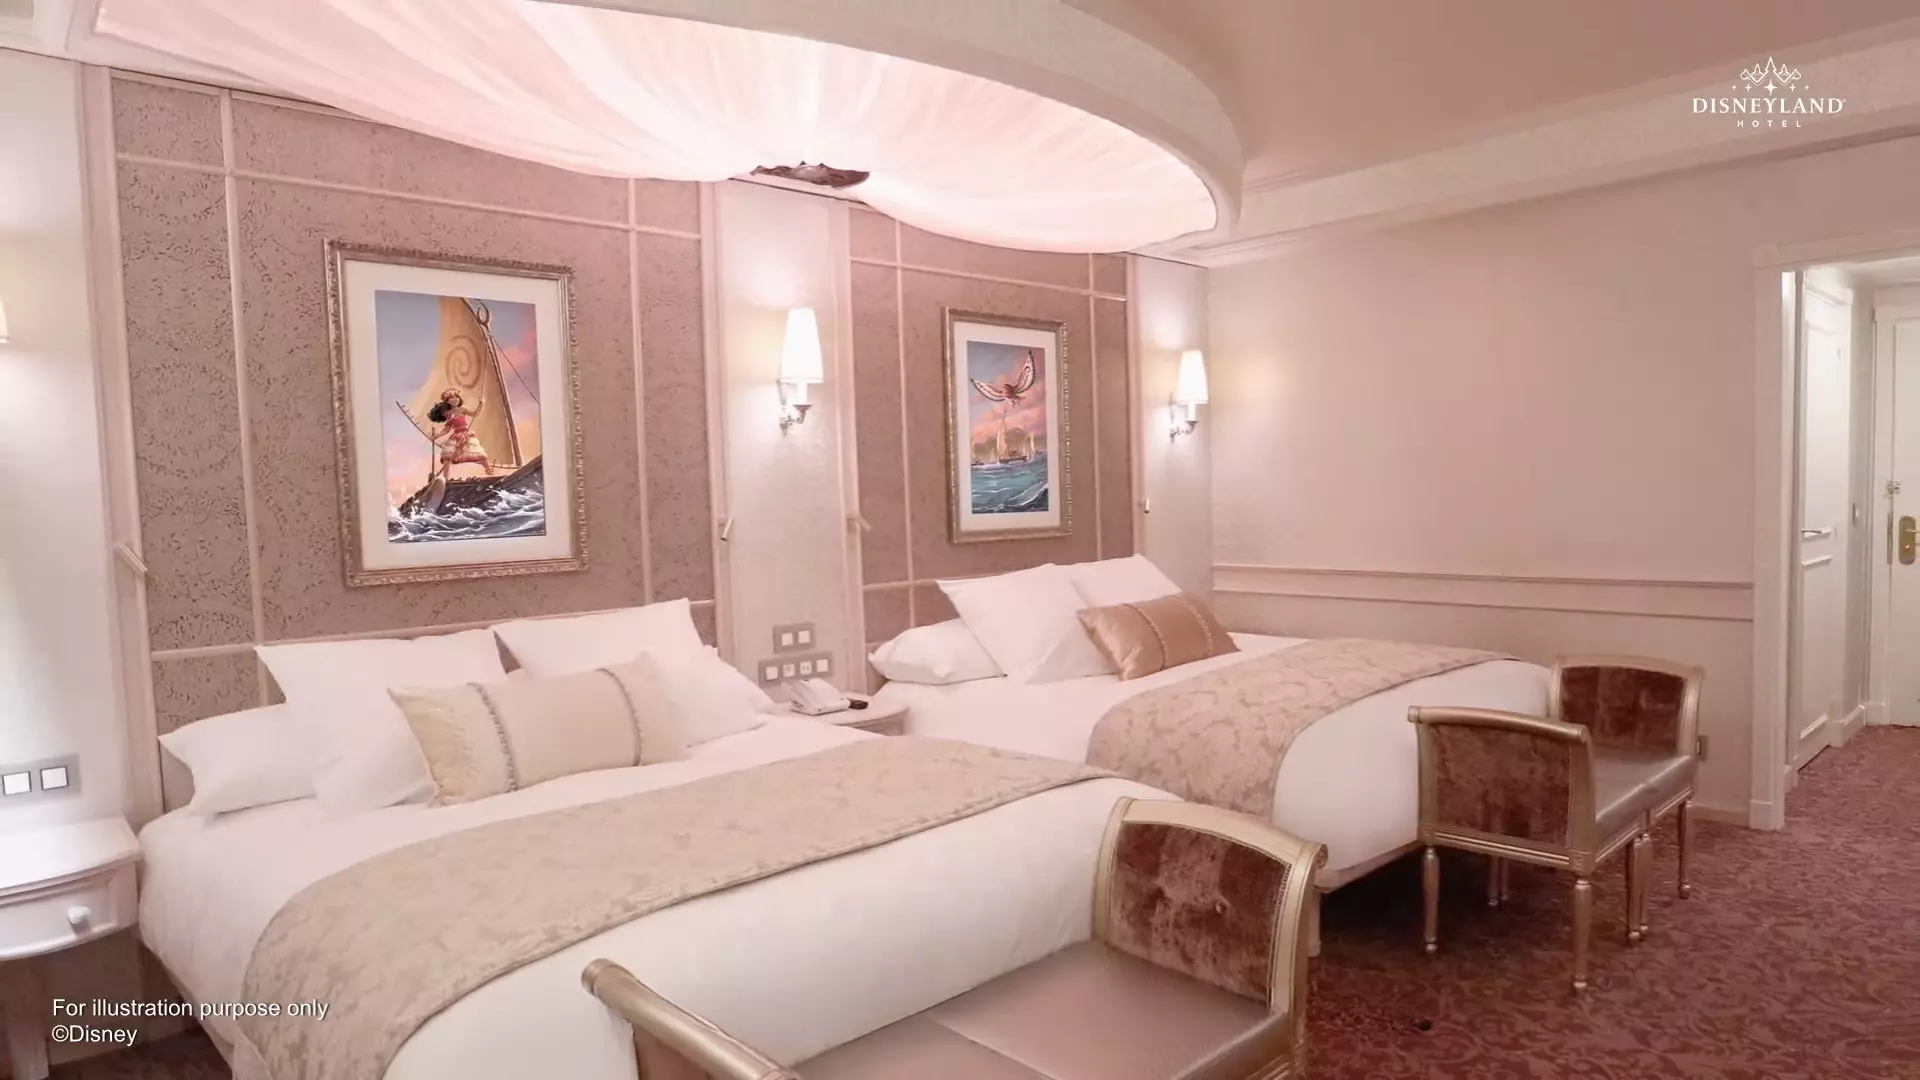 Chambre Deluxe, avec sa palette de couleurs plus douces et ses tonalités doré et pourpre - Disneyland Paris